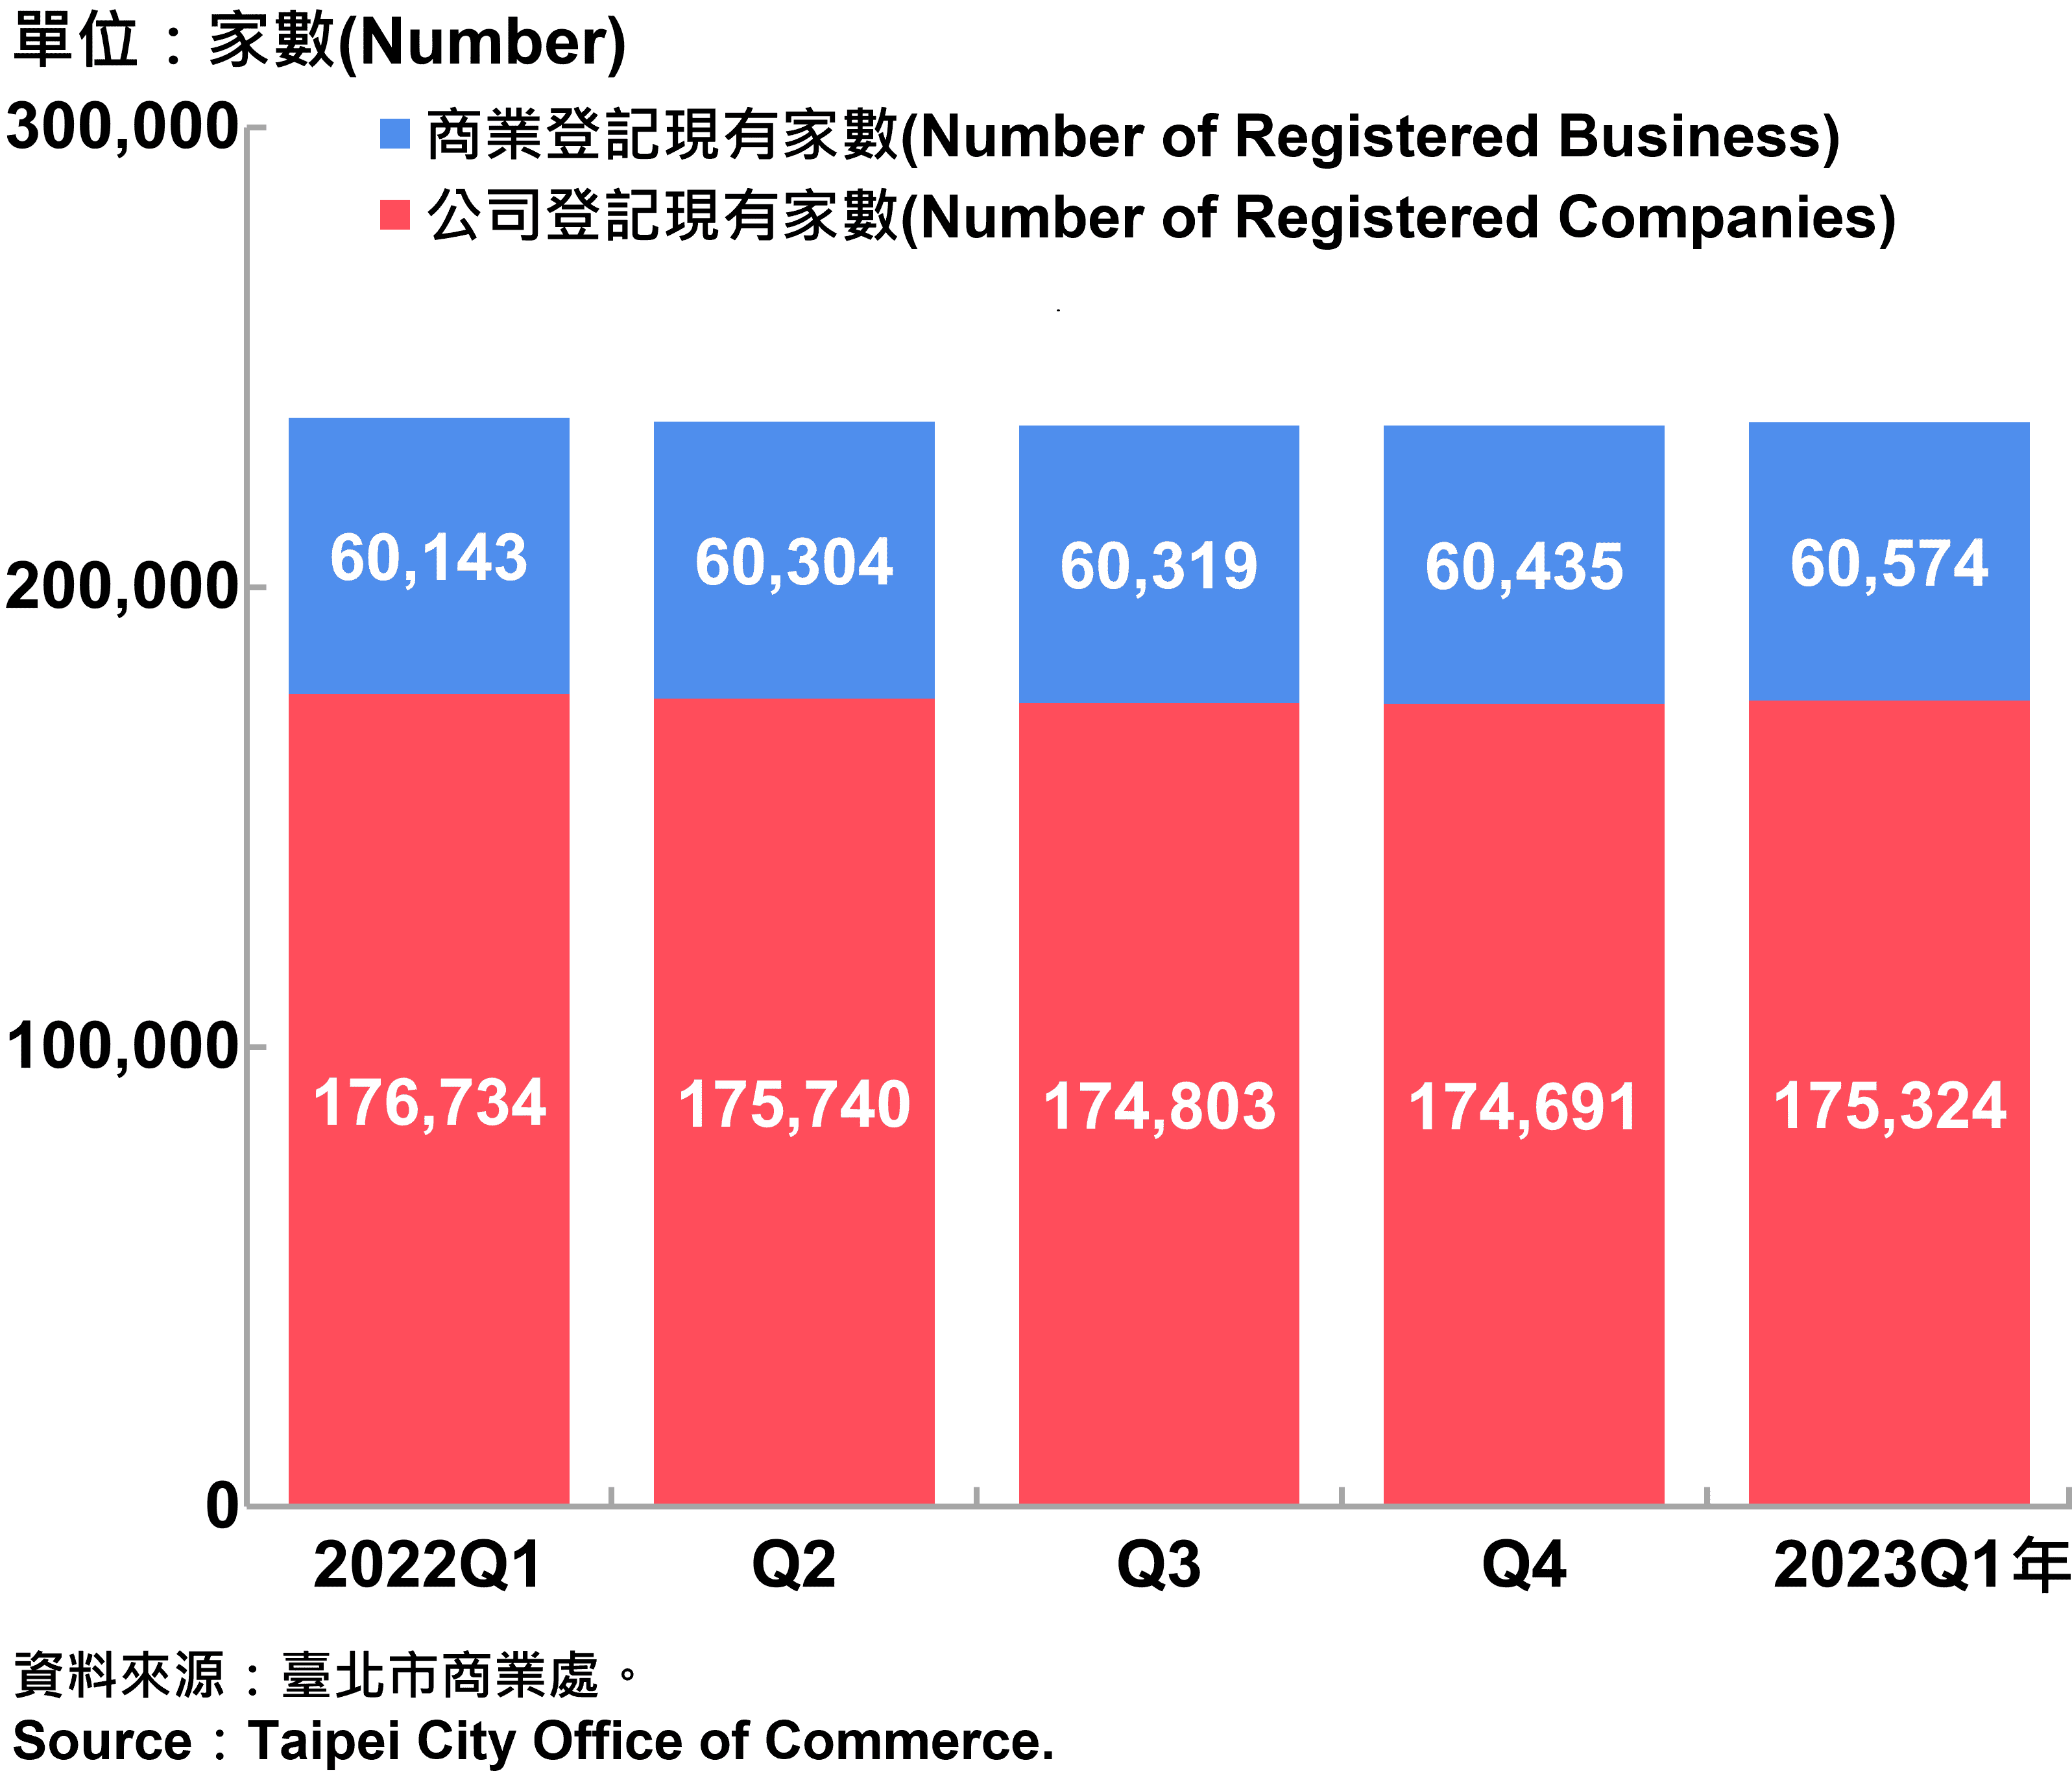 臺北市工商登記家數—2023Q1 Industry & Business Registration in Taipei City—2023Q1